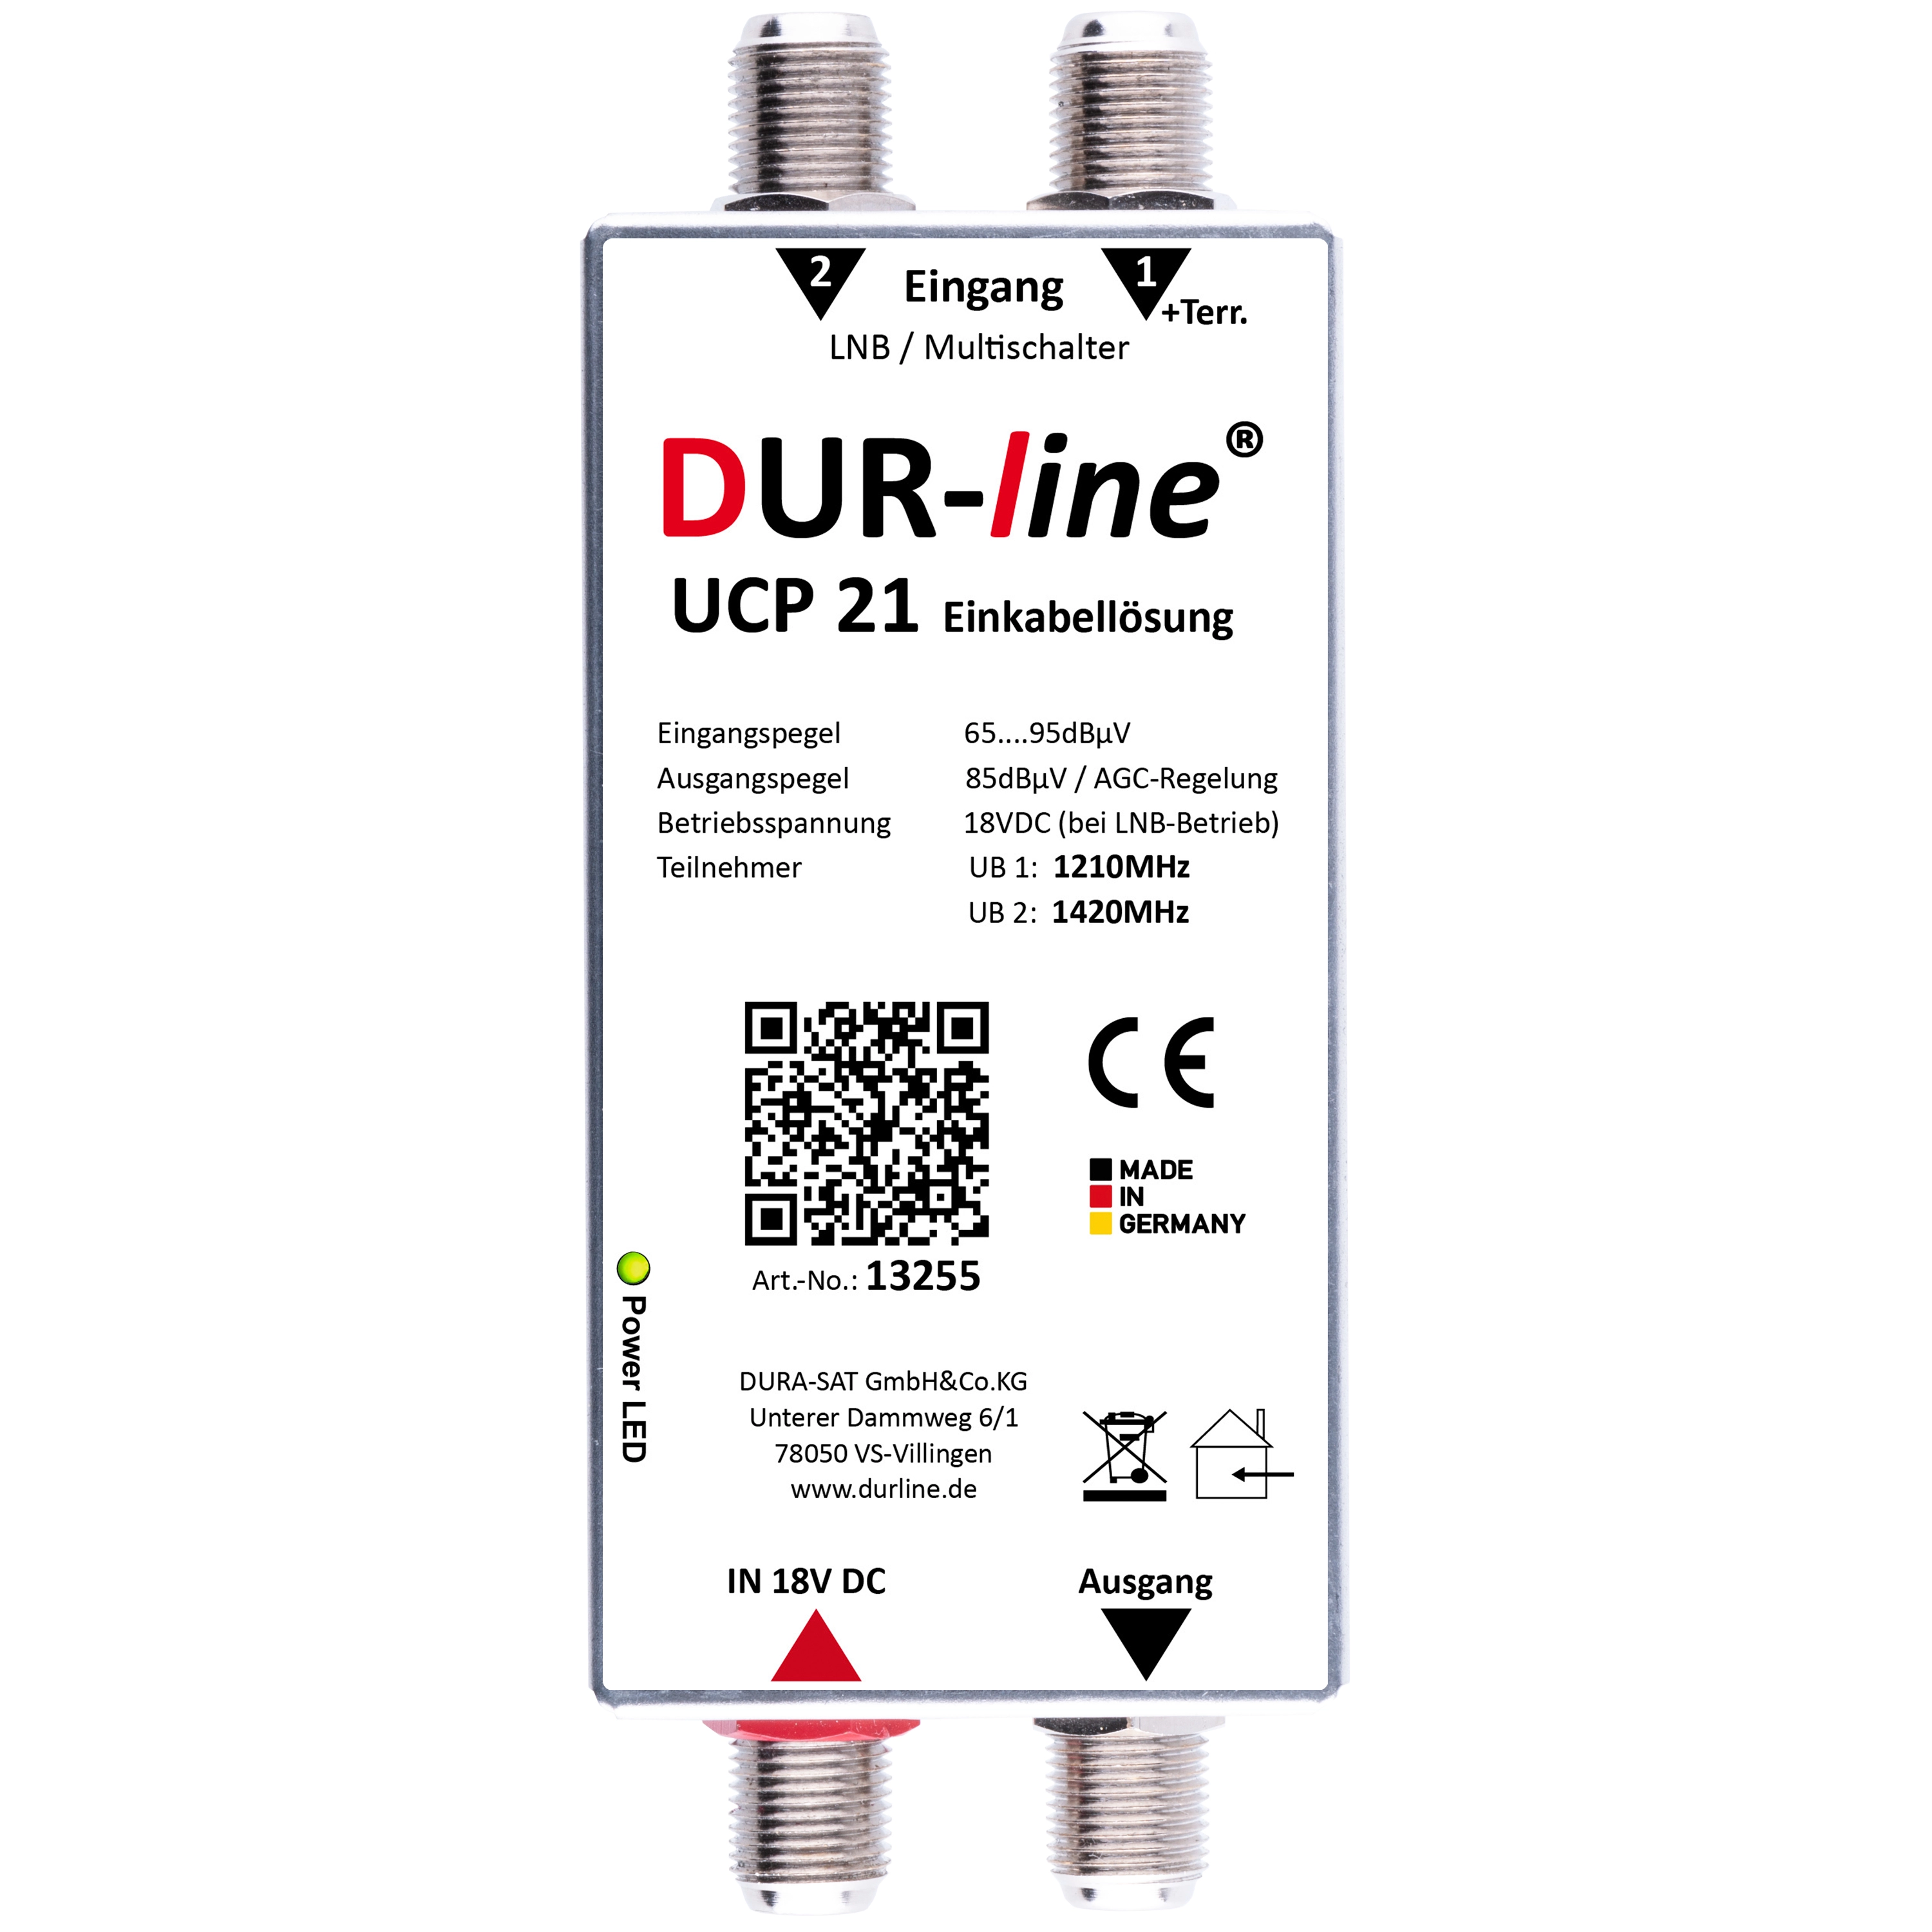 DUR-line UCP 21 - Einkabellösung